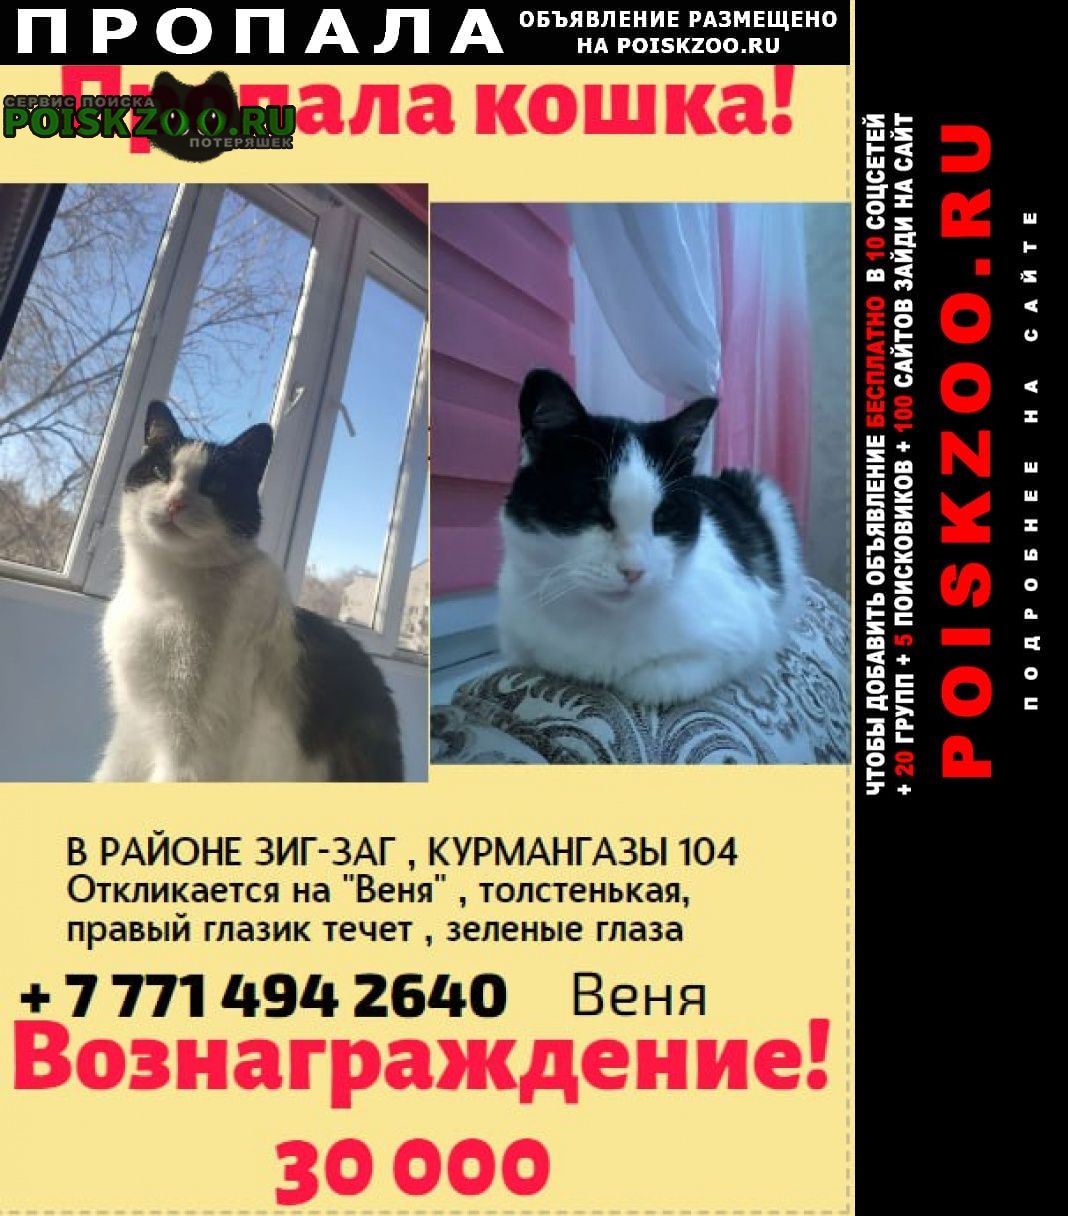 Пропала кошка вознаграждение 30000 Уральск Западно-Казахстанская обл.